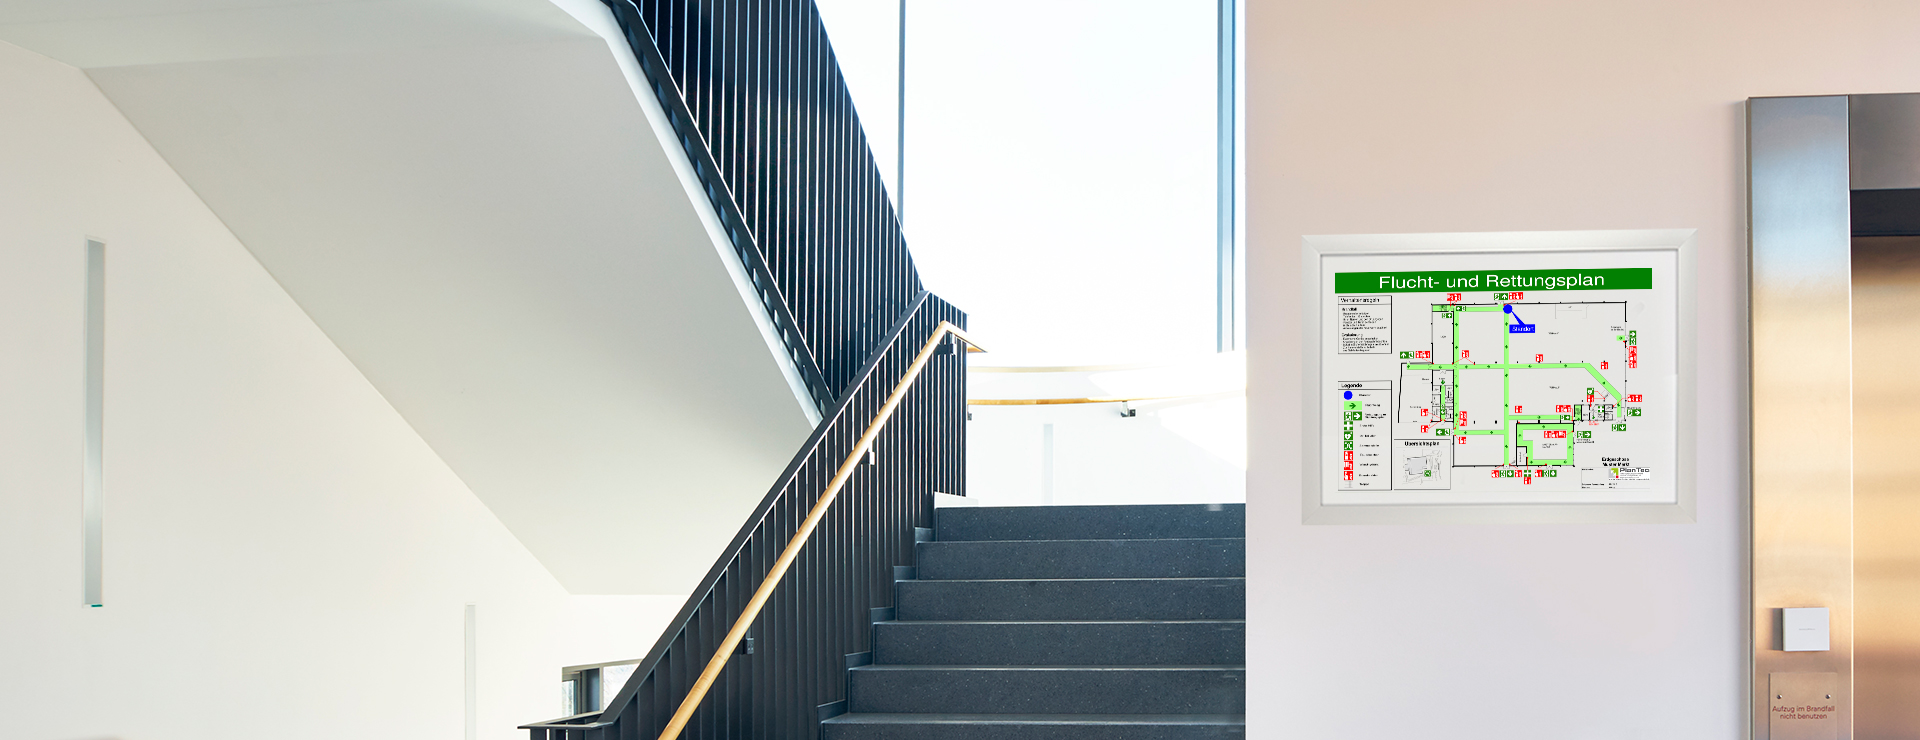 Treppenhaus in einem modernen Gebäude, Neben dem Aufzug hängt ein Flucht- und Rettungsplan